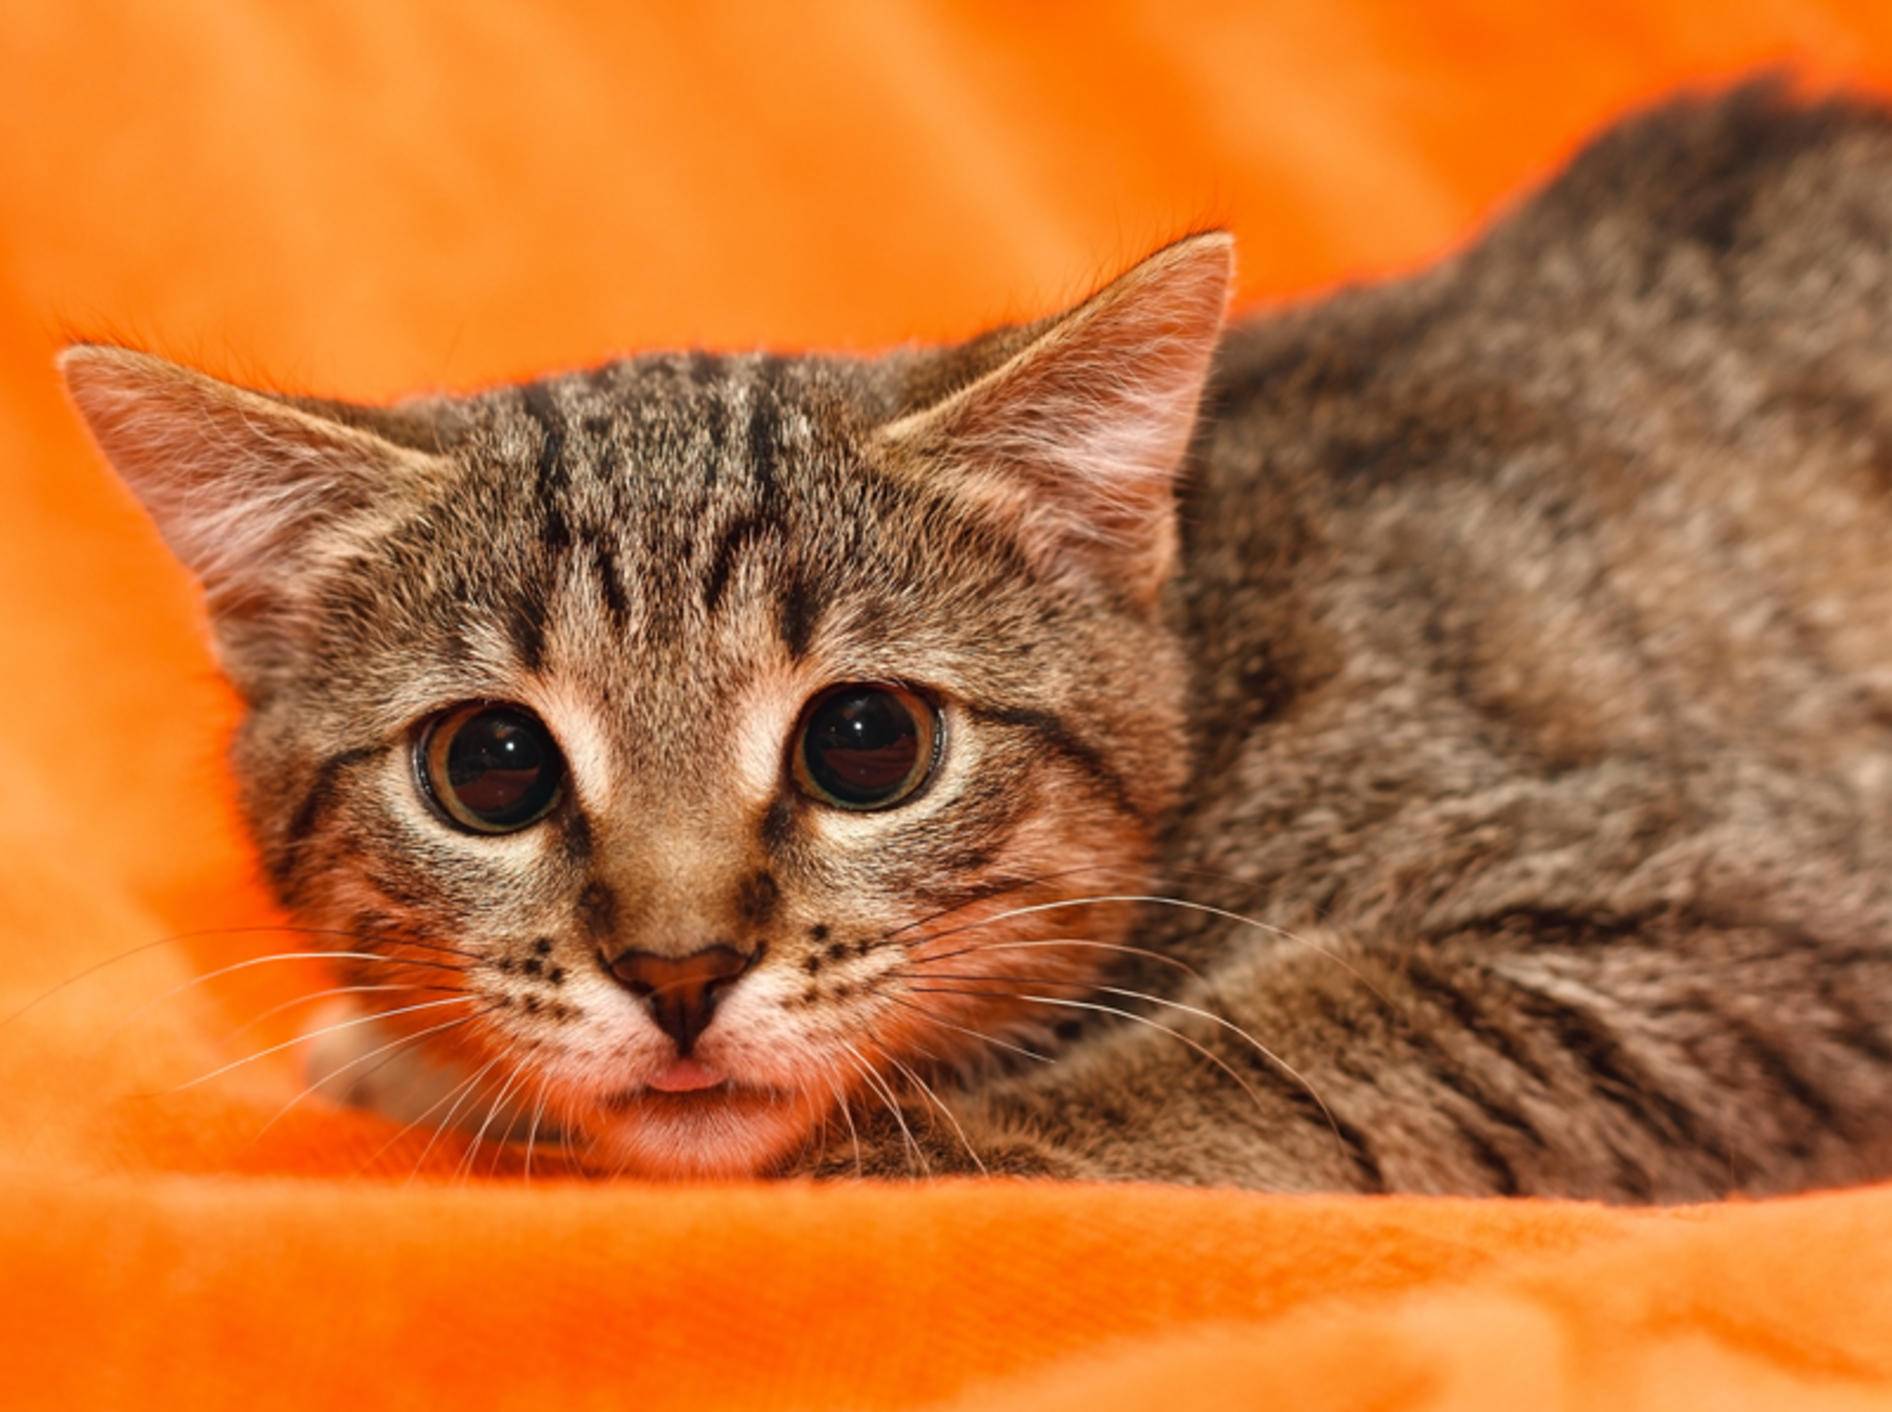 Geweitete Pupillen, angelegte Ohren und eine geduckte Haltung deuten auf eine traumatisierte Katze hin – Shutterstock / Pashin Georgiy